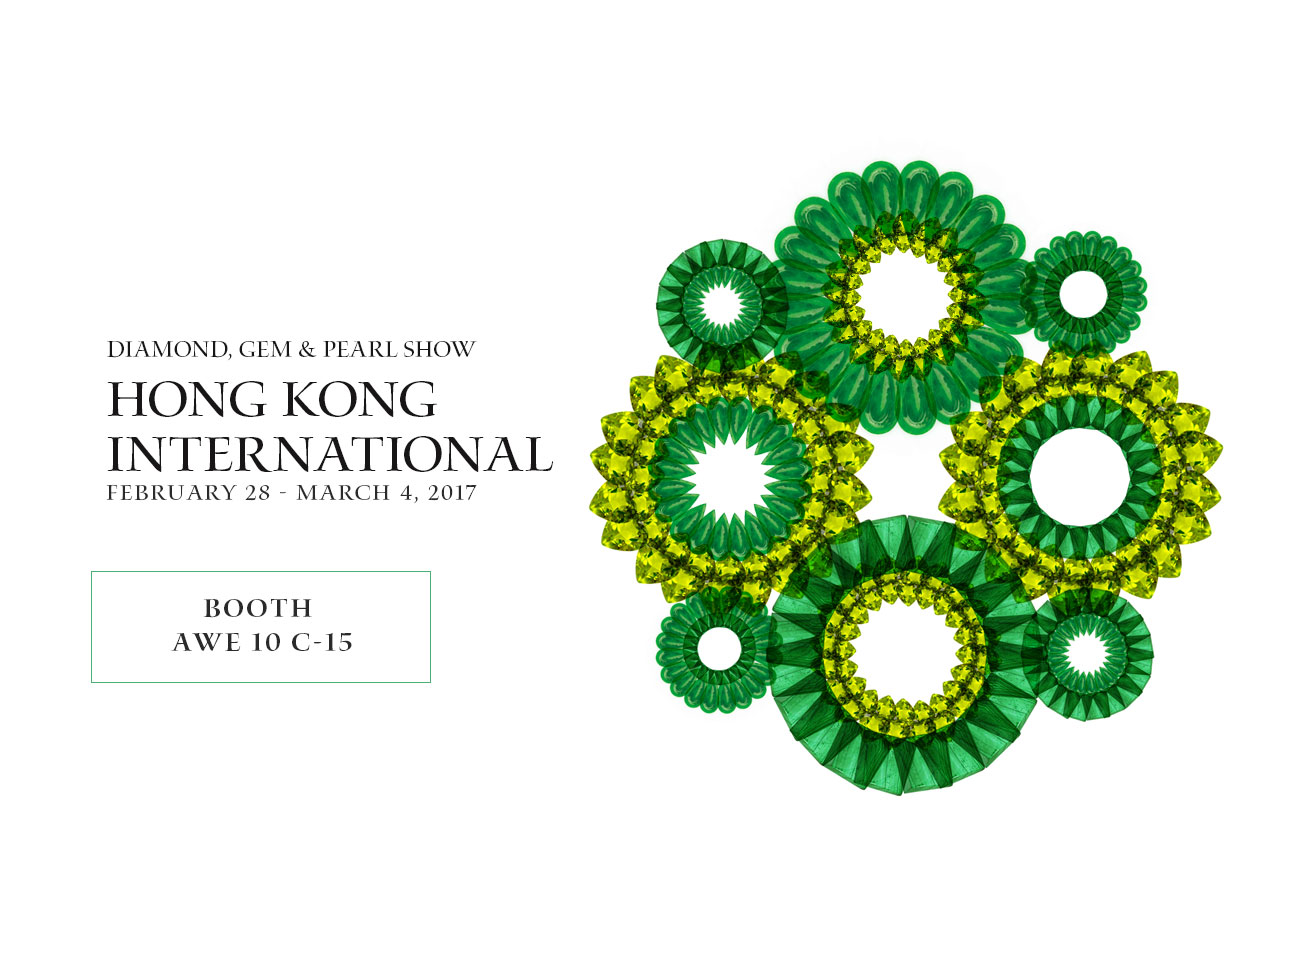 HTDC - Hong kong International Diamond, Gem & Pearl Show